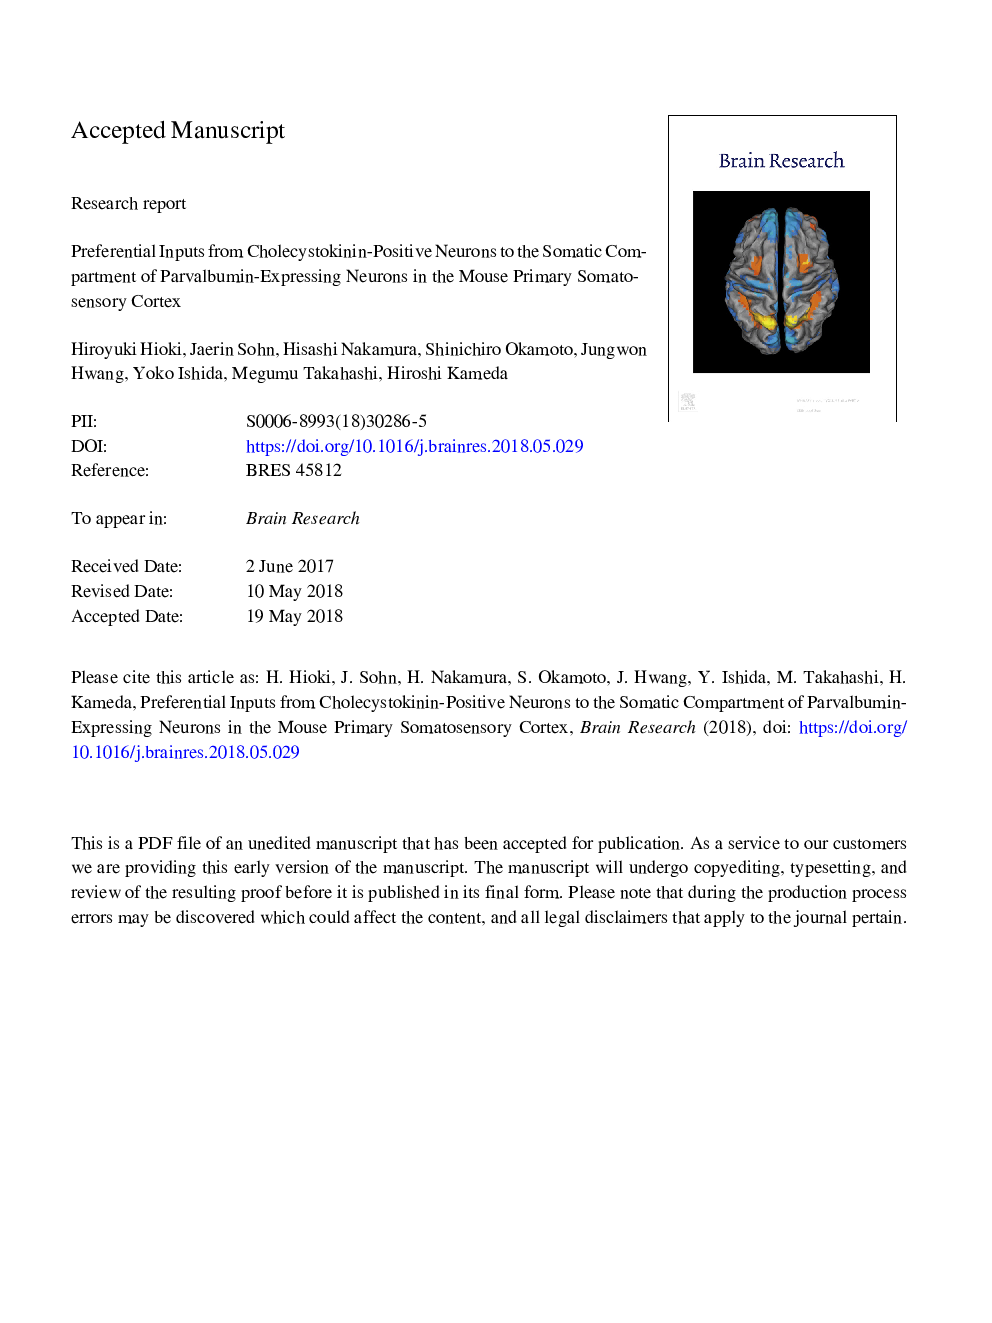 ورودی های ترجیحی از نورون های مثبت کوستسیستین کینین به محفظه ترکیبی نورون های بیان کننده پارافبومین در قشر مغزی سومیوسنسورس 